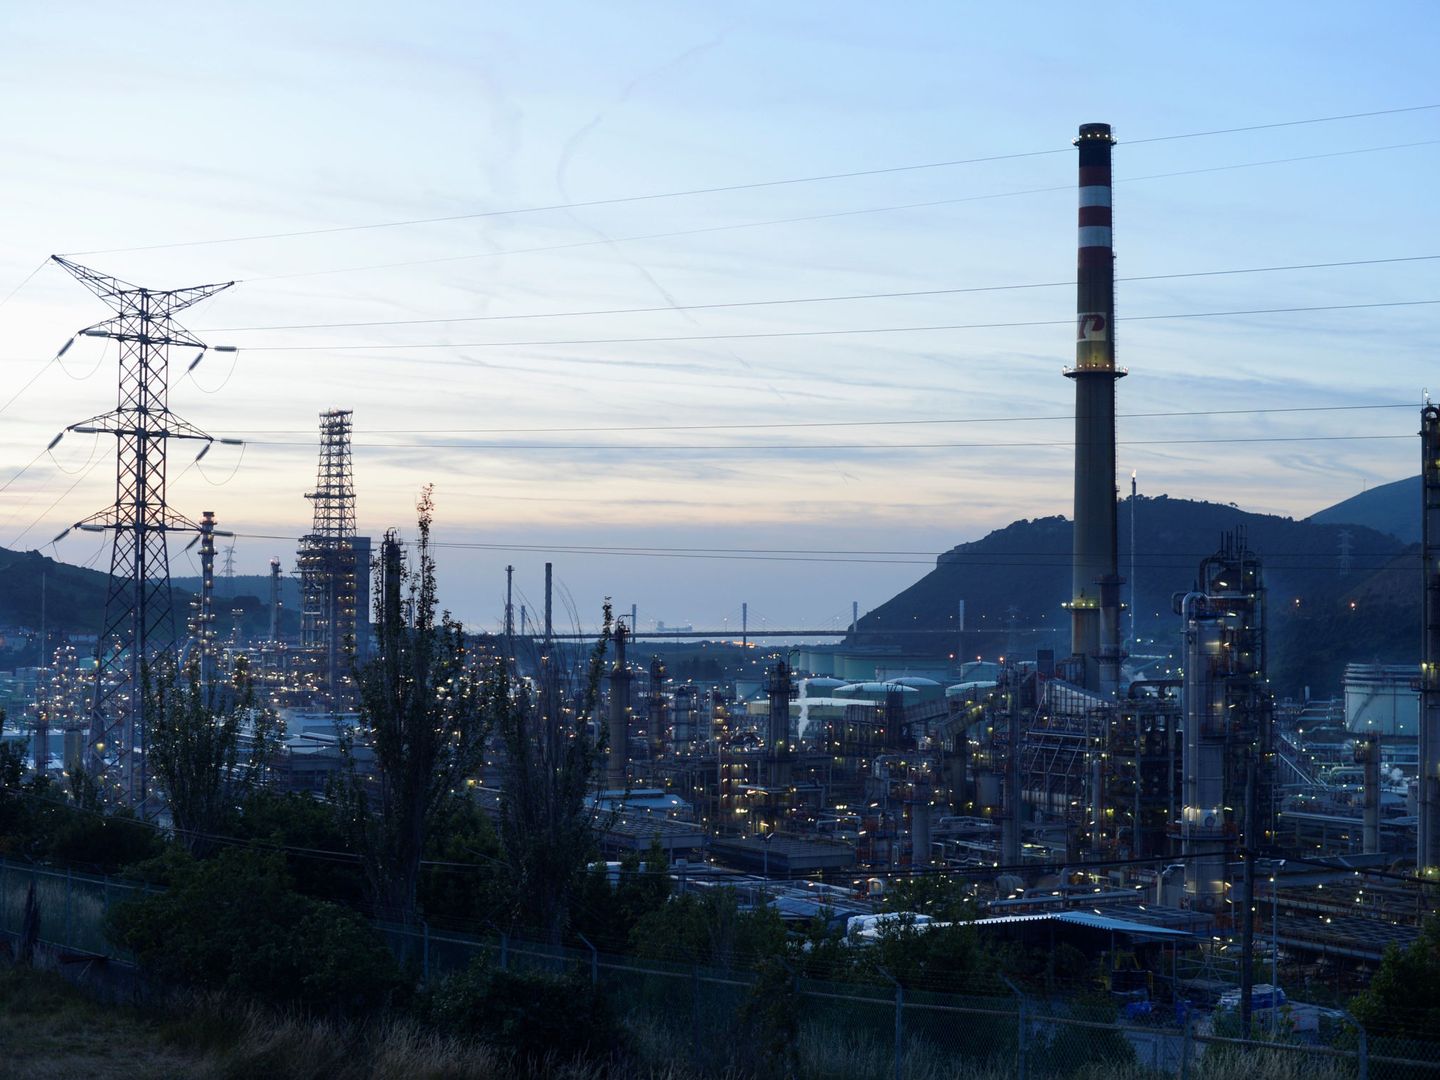 Vista de la refinería de Petronor en Muskiz, Vizcaya. (Reuters)